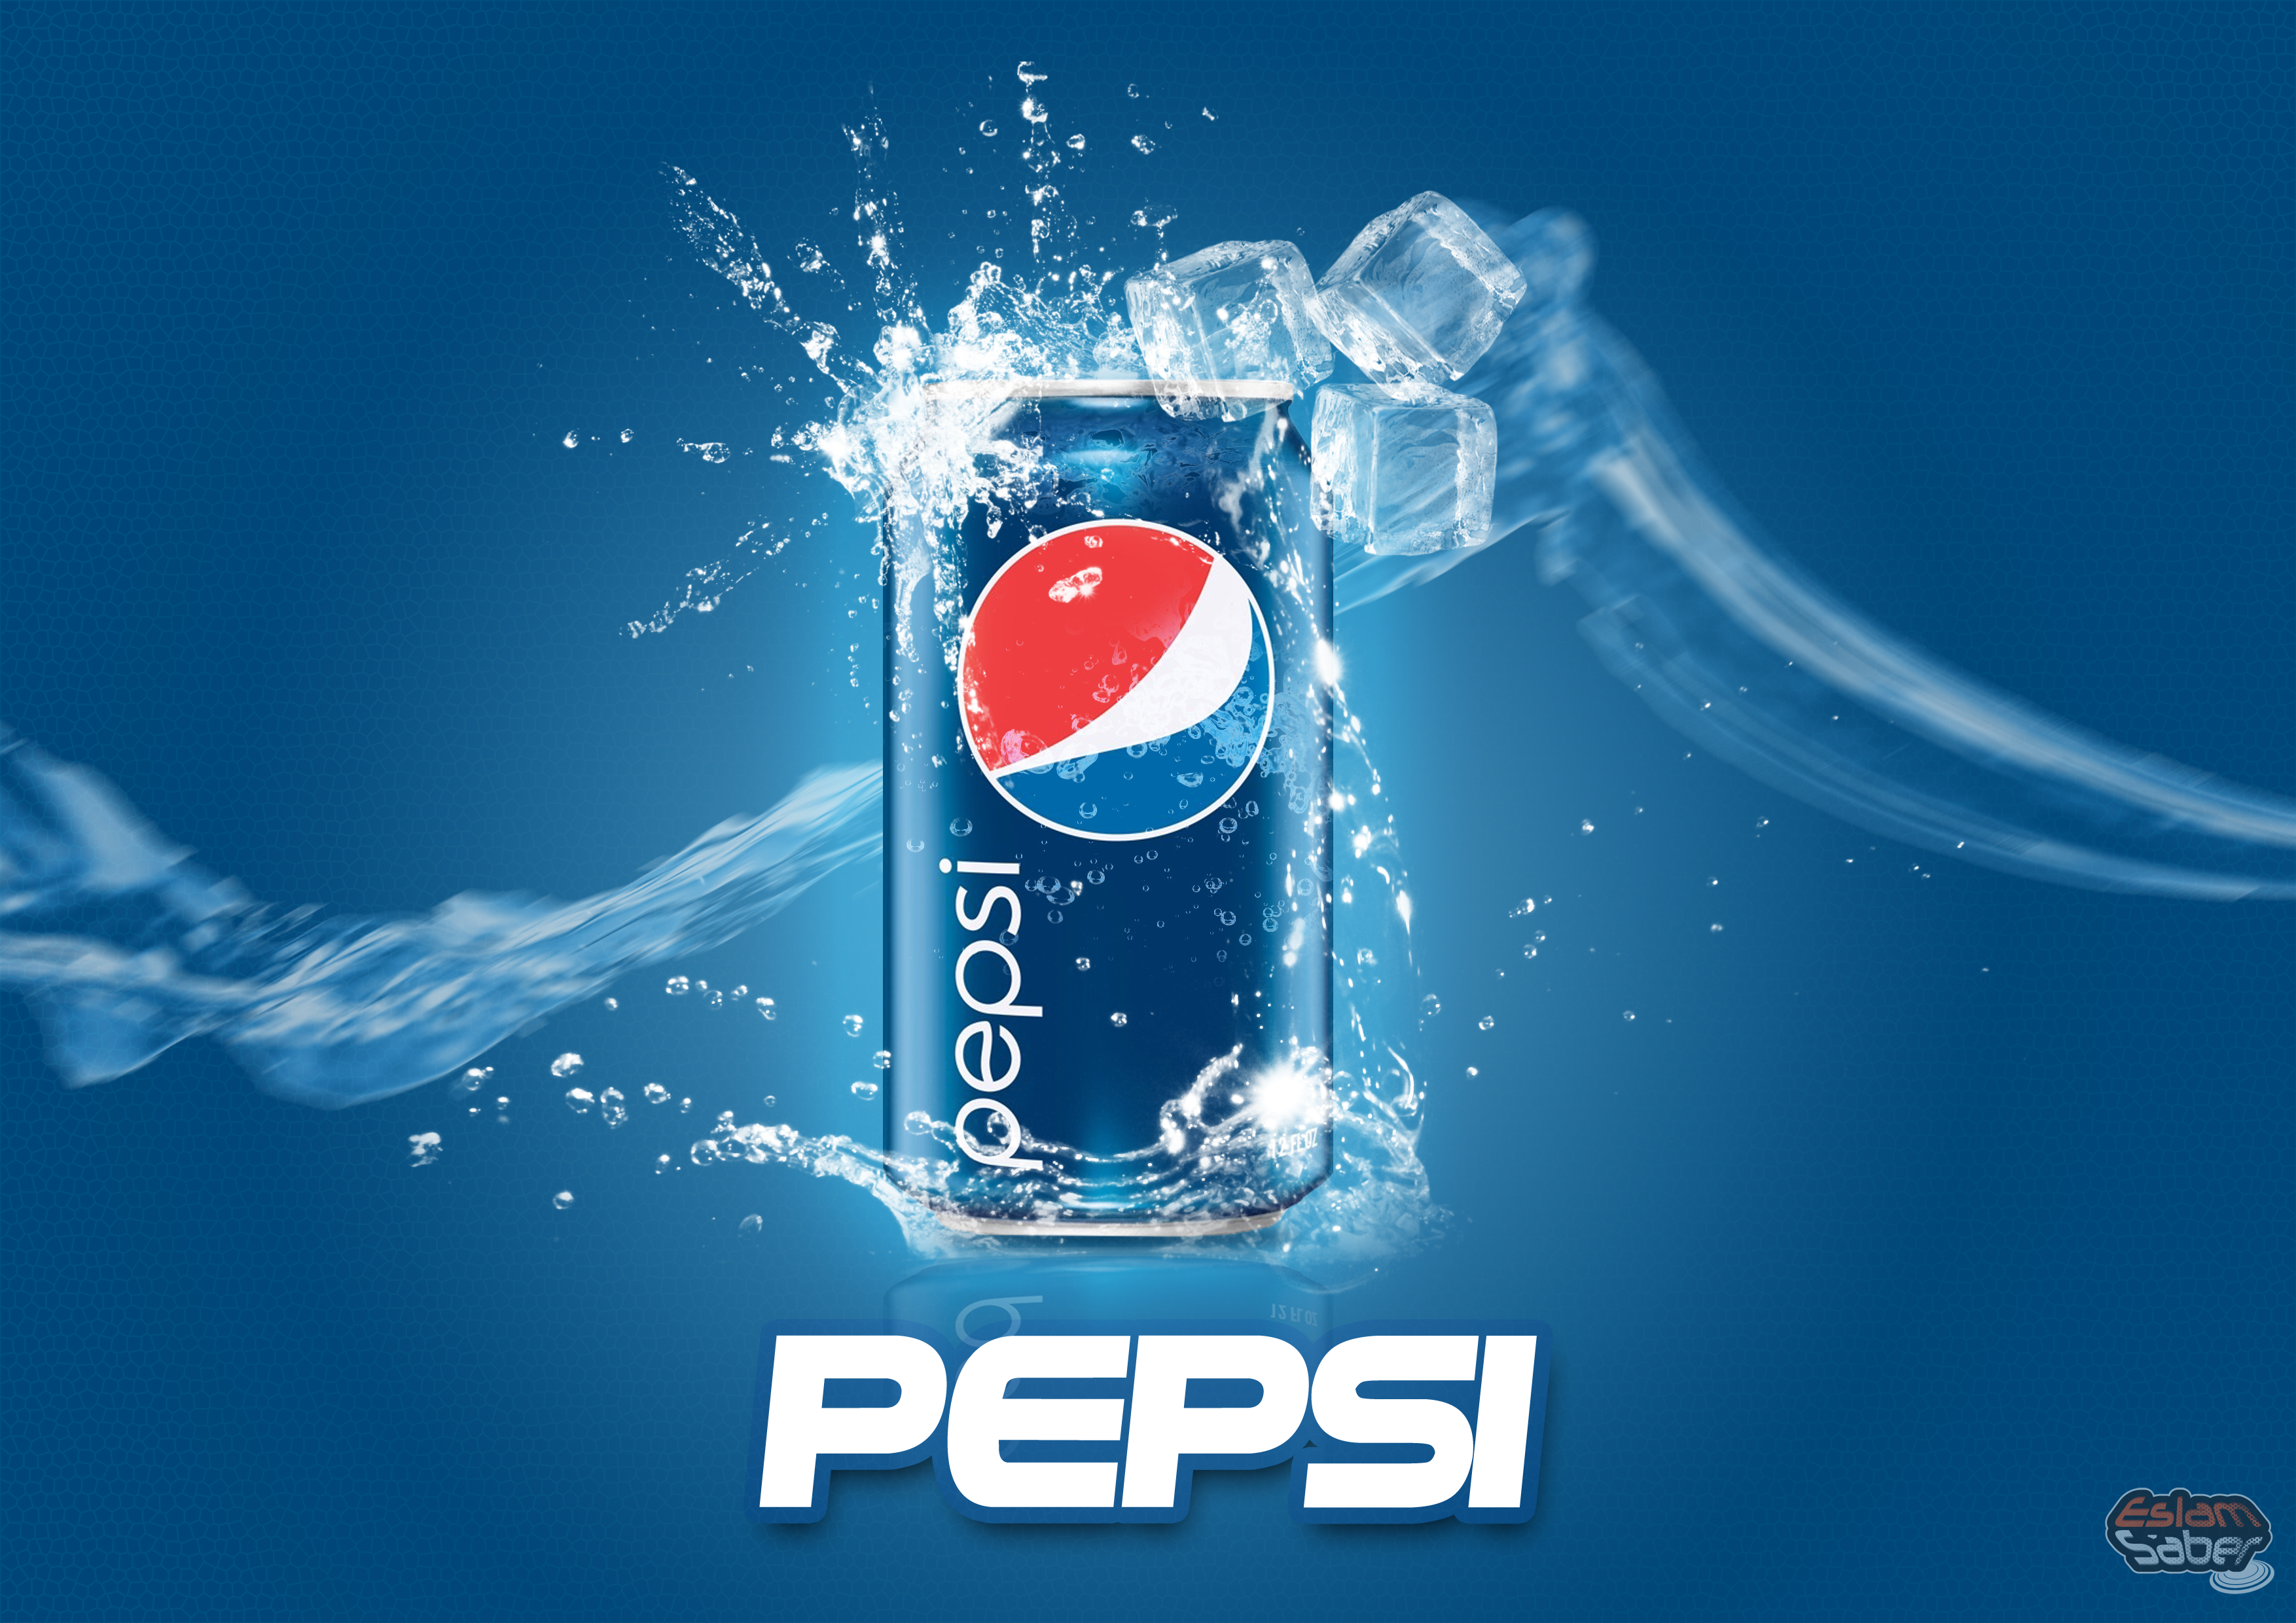 Pepsi ka përbërës kancerogjen